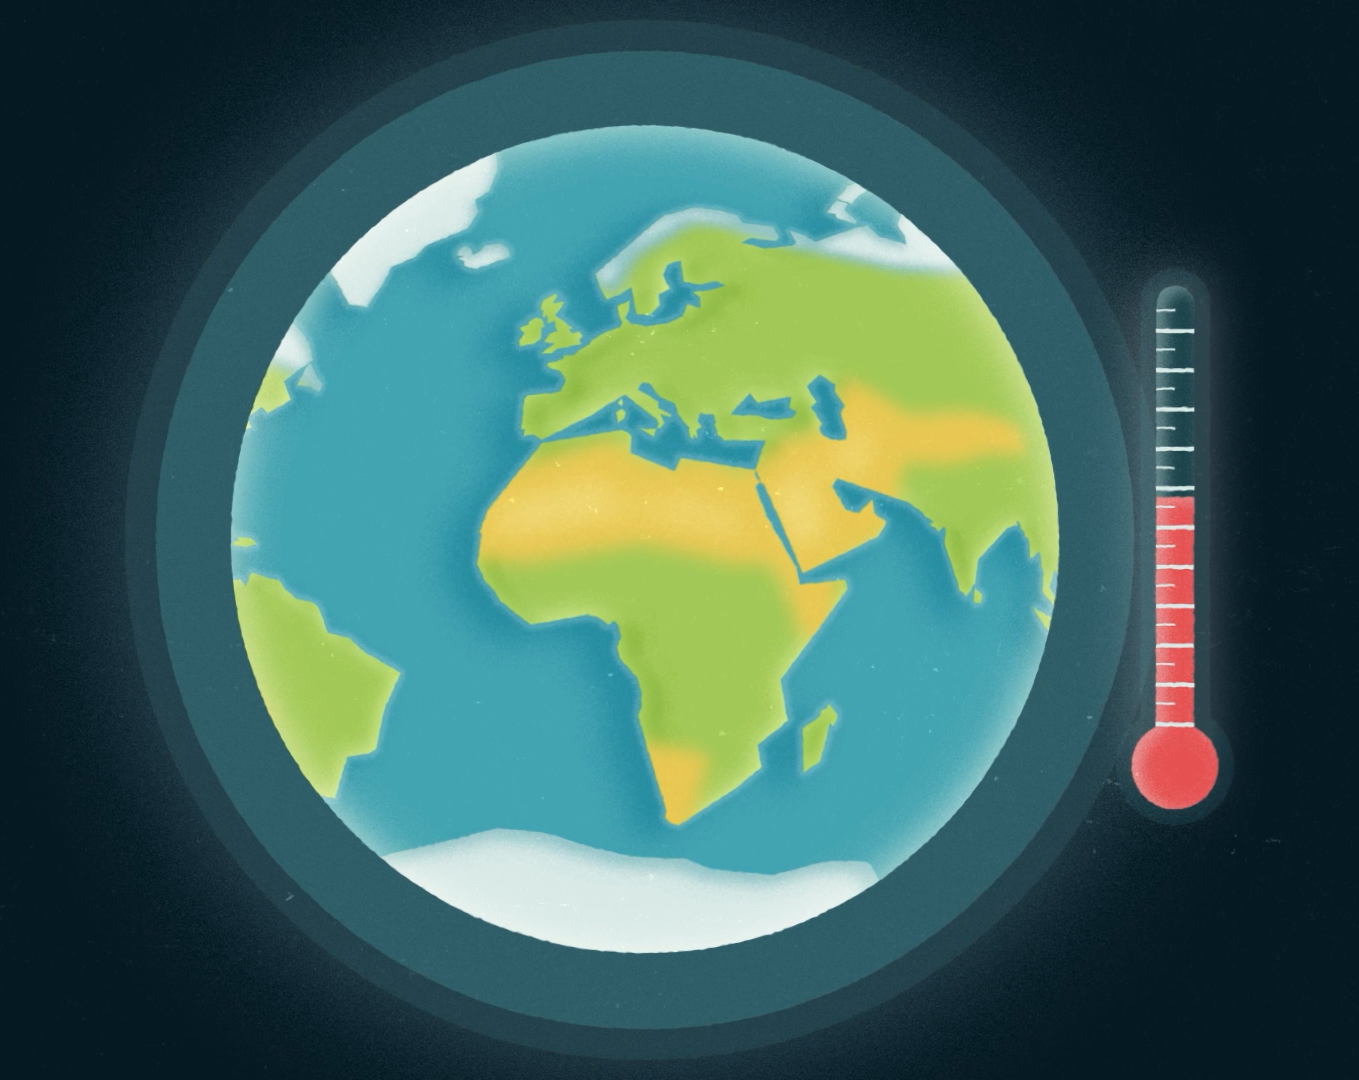 Screenshot aus dem IKI-Erklärfilm. Eine gezeichnete Weltkugel, daneben ein Thermometer